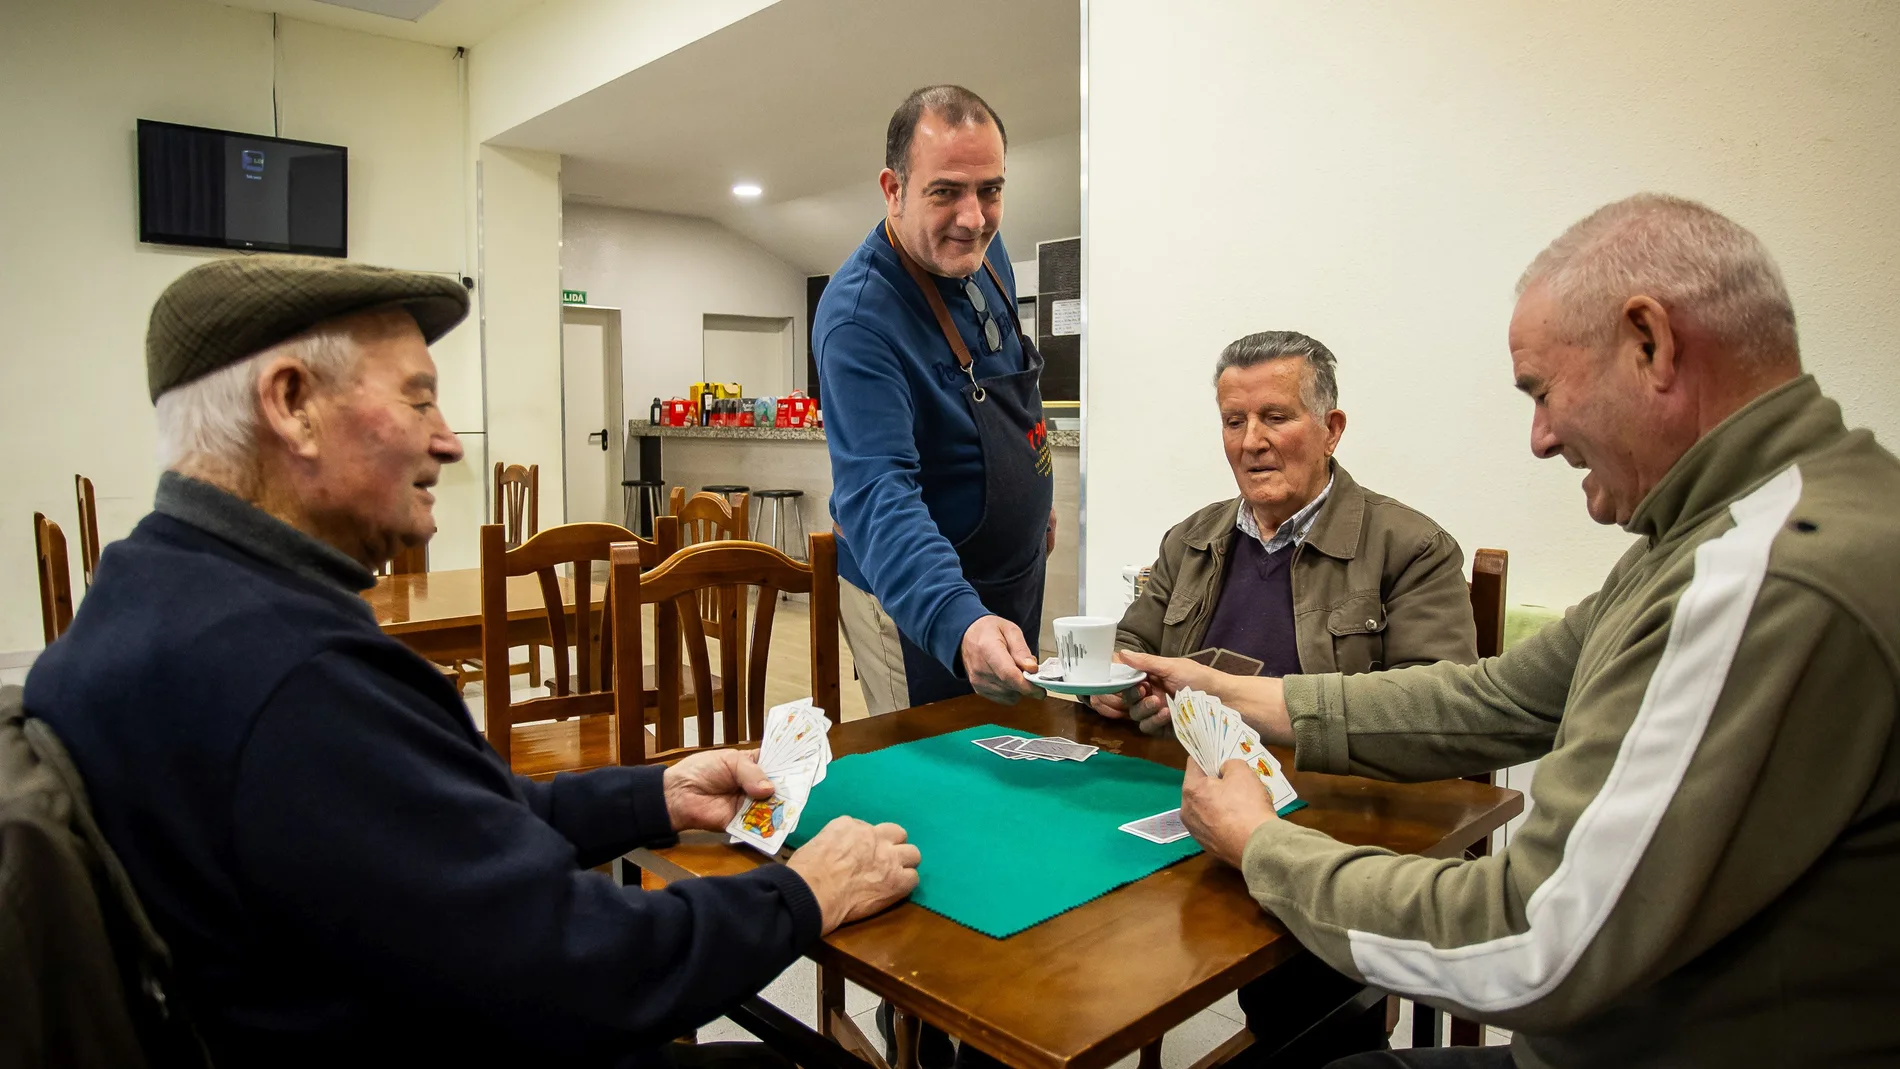 Ricardo Arnal, del bar de Sepulcro Hilario, sirve a sus clientes que juegan la partida